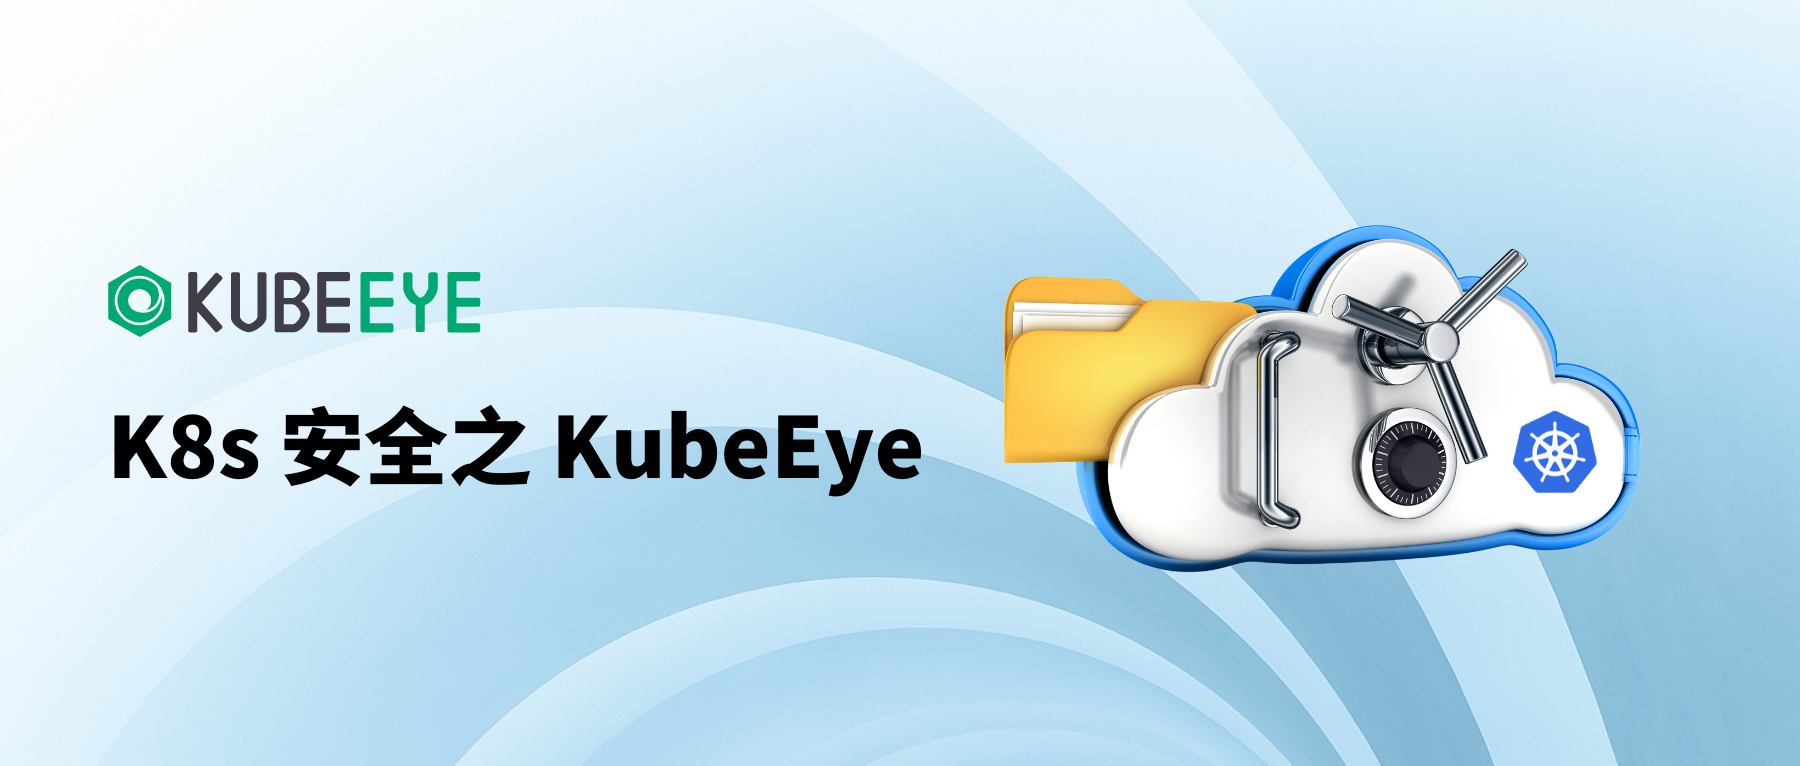 Kubernetes 安全及配置问题检测工具 KubeEye 使用教程